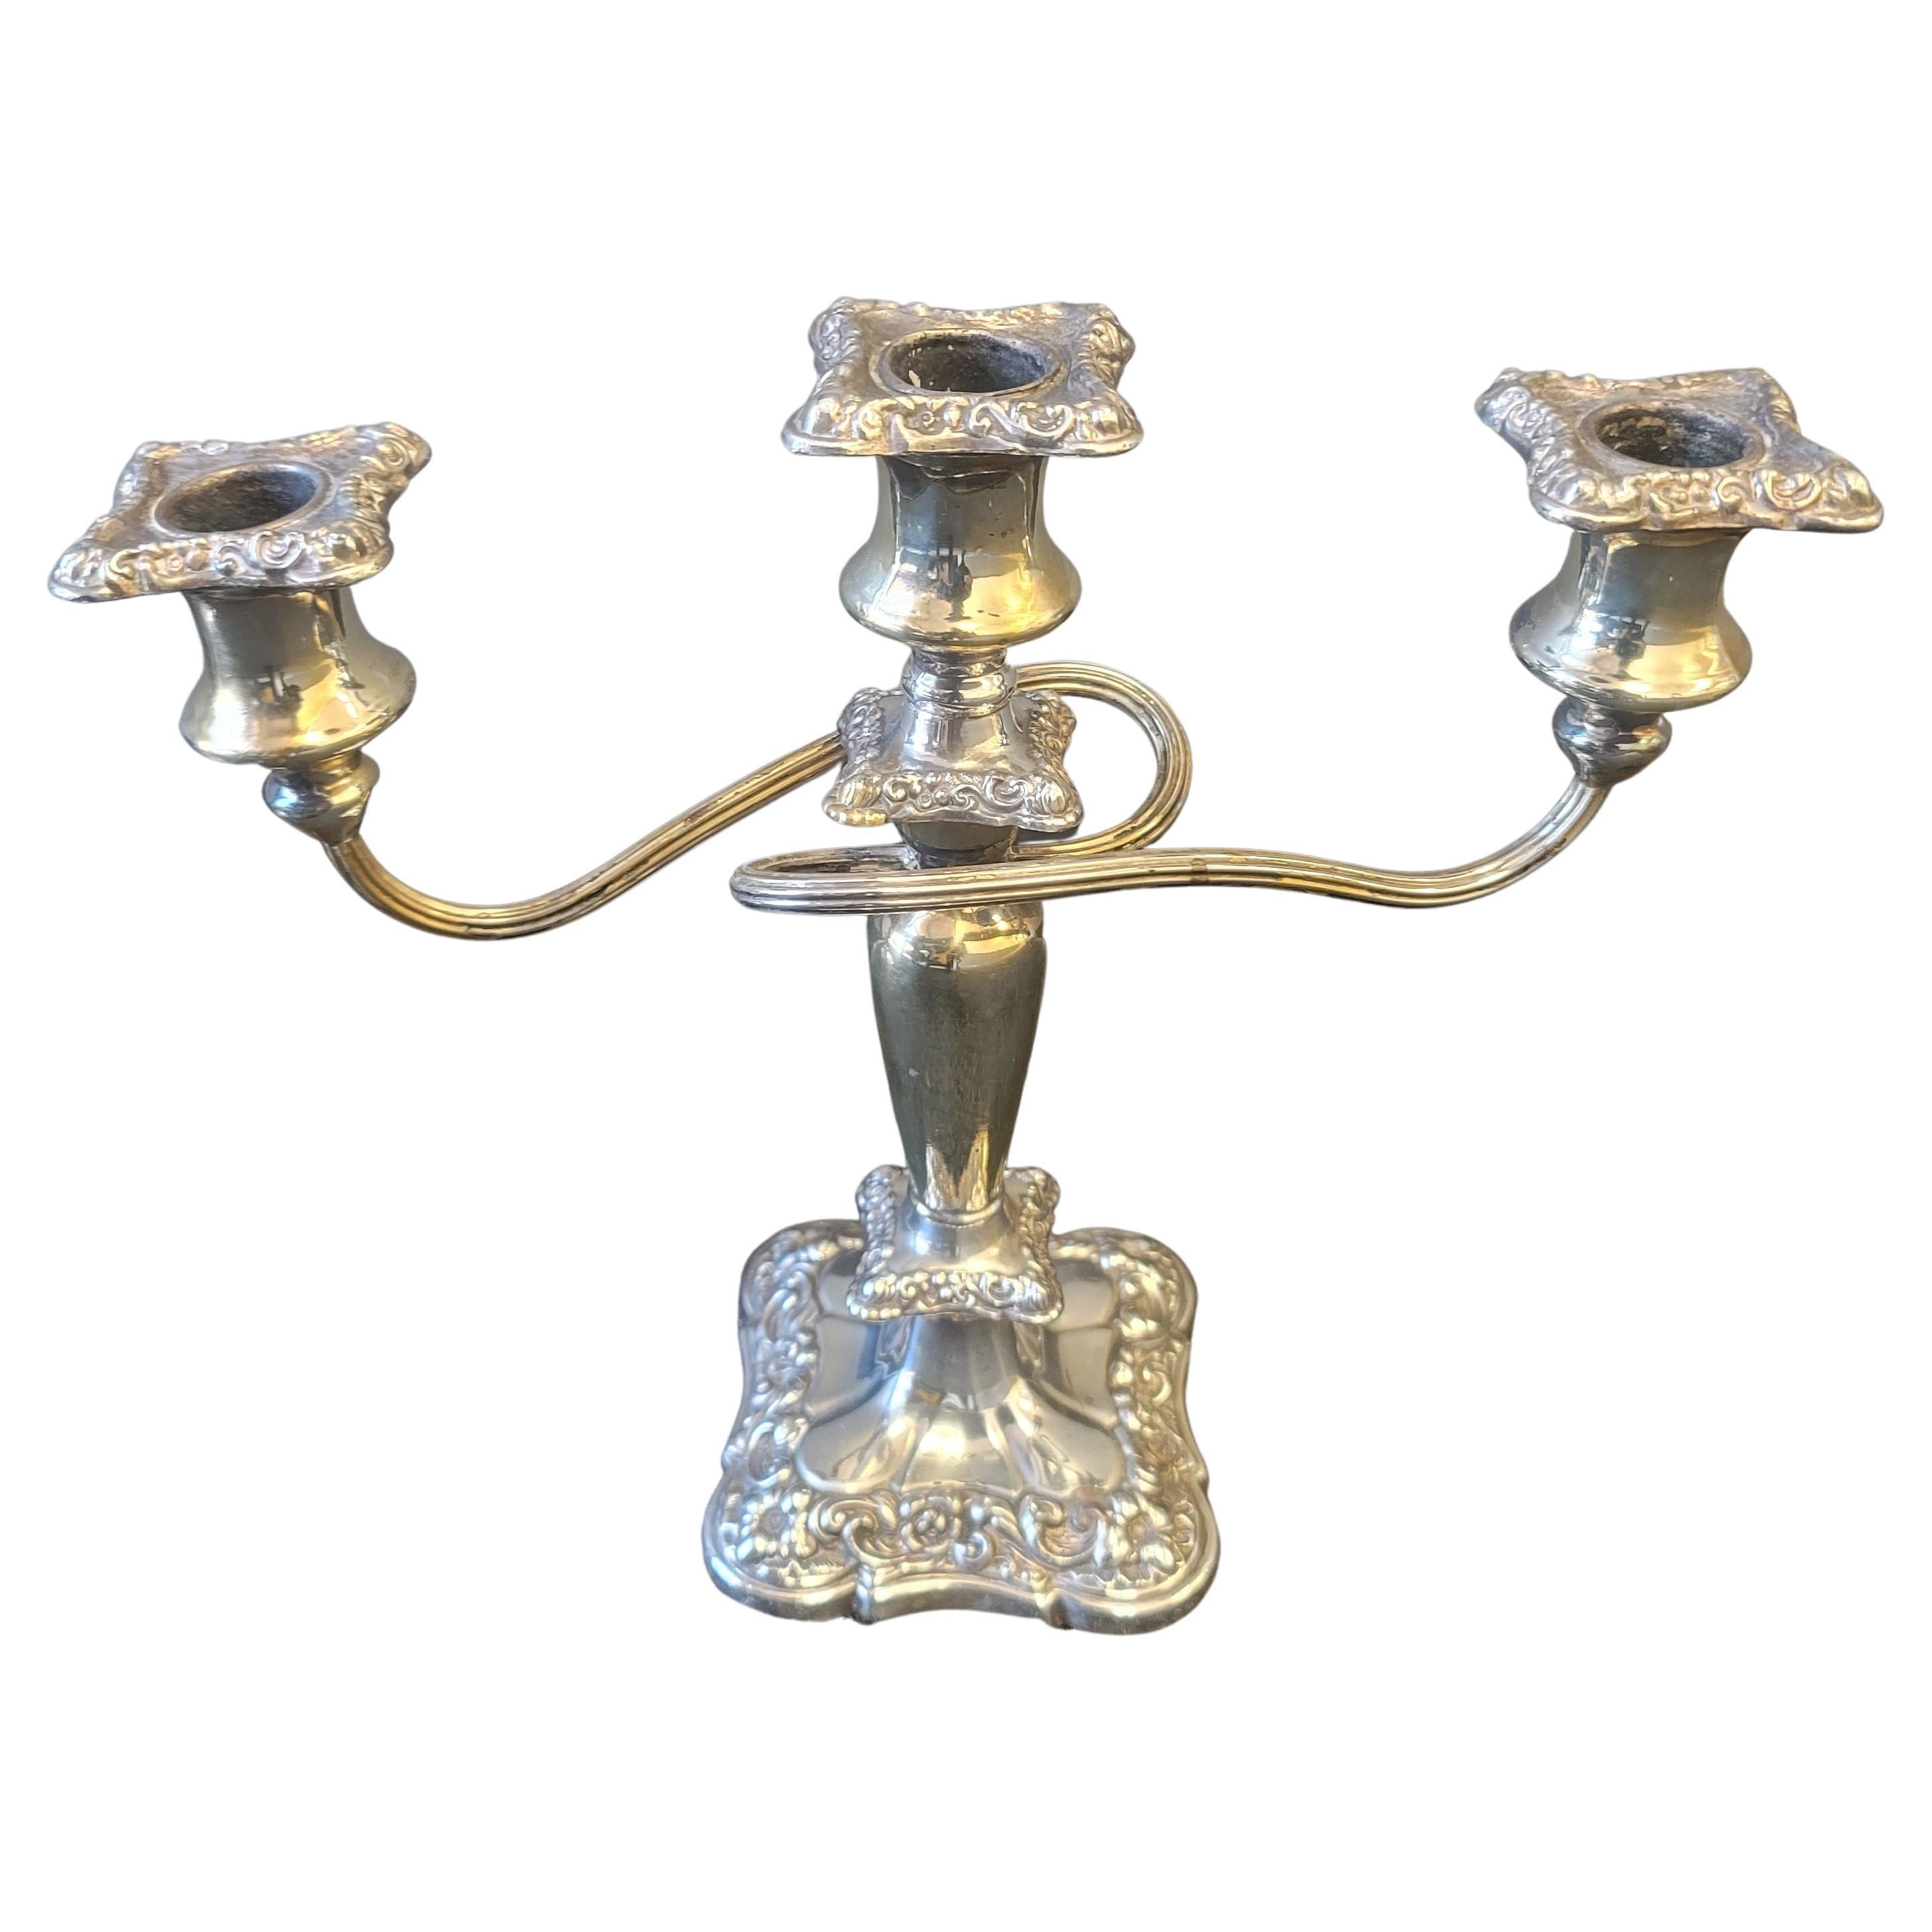 Paire de chandeliers anglais anciens en métal argenté orné mesurant 11,5